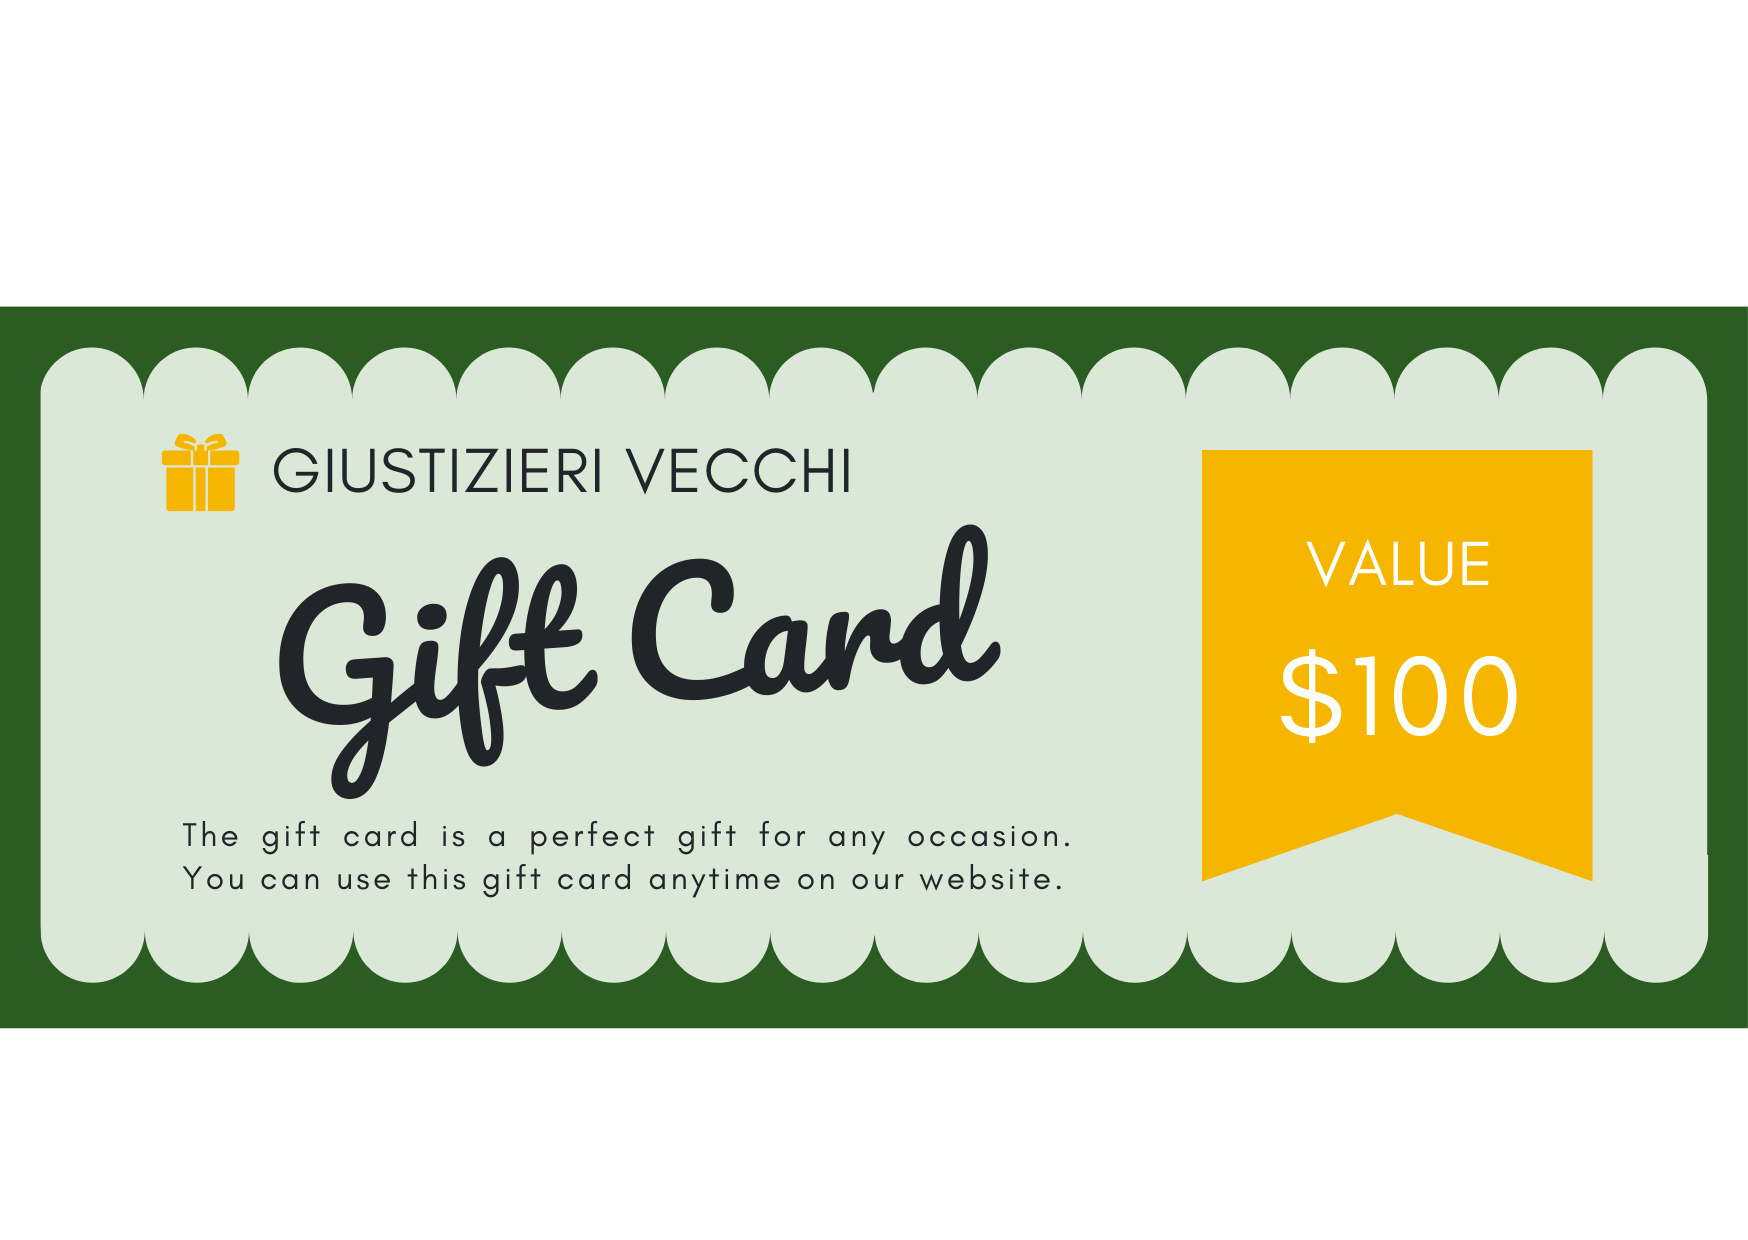 GIUSTIZIERI VECCHI $100.00 GVecchi Gift Card